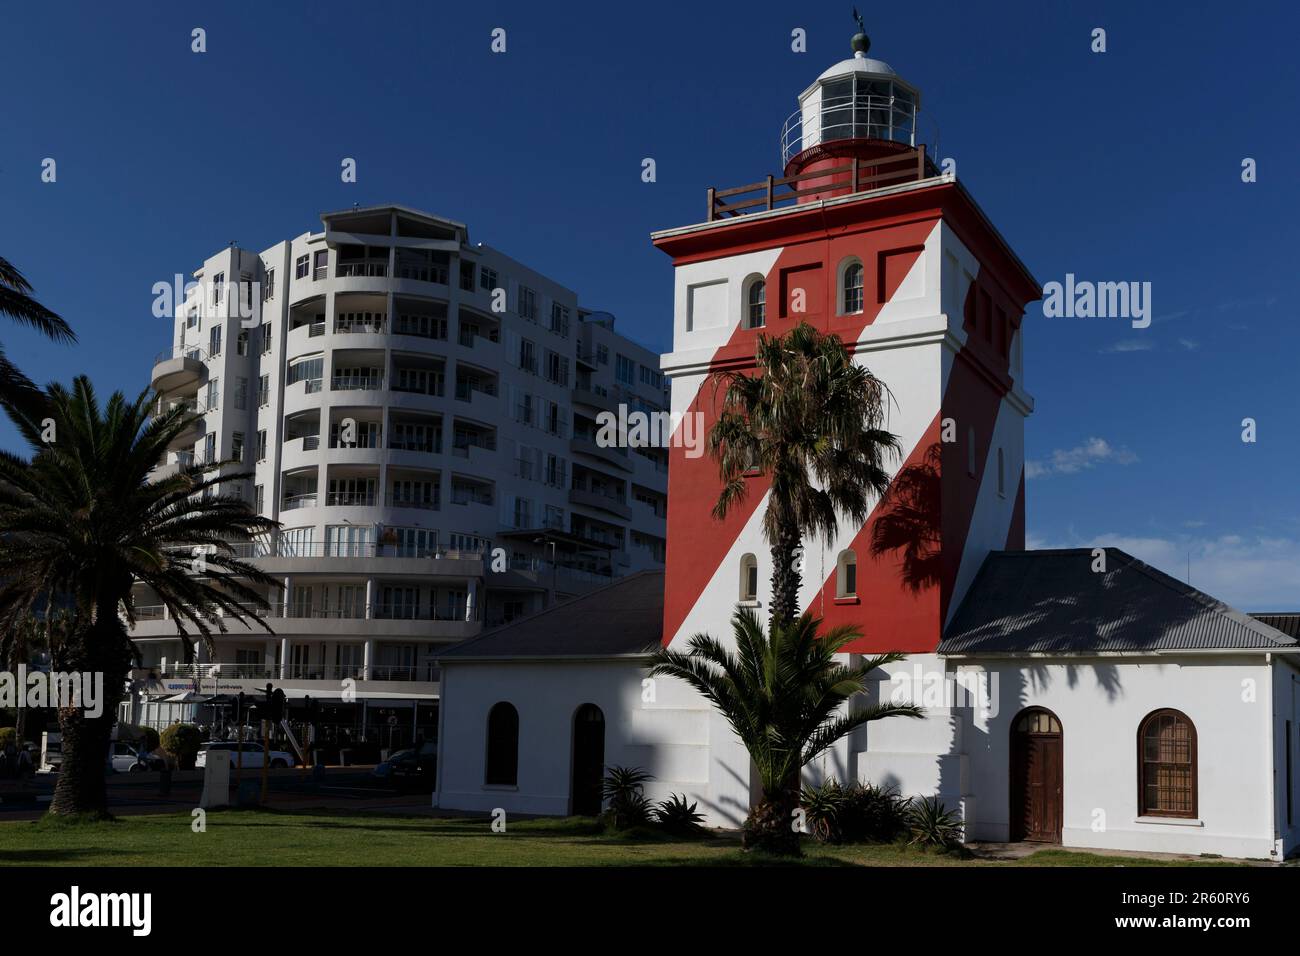 Ein Blick aus der Vogelperspektive auf ein modernes Gebäude mit einem unverwechselbaren Turm in Rot und Weiß Stockfoto